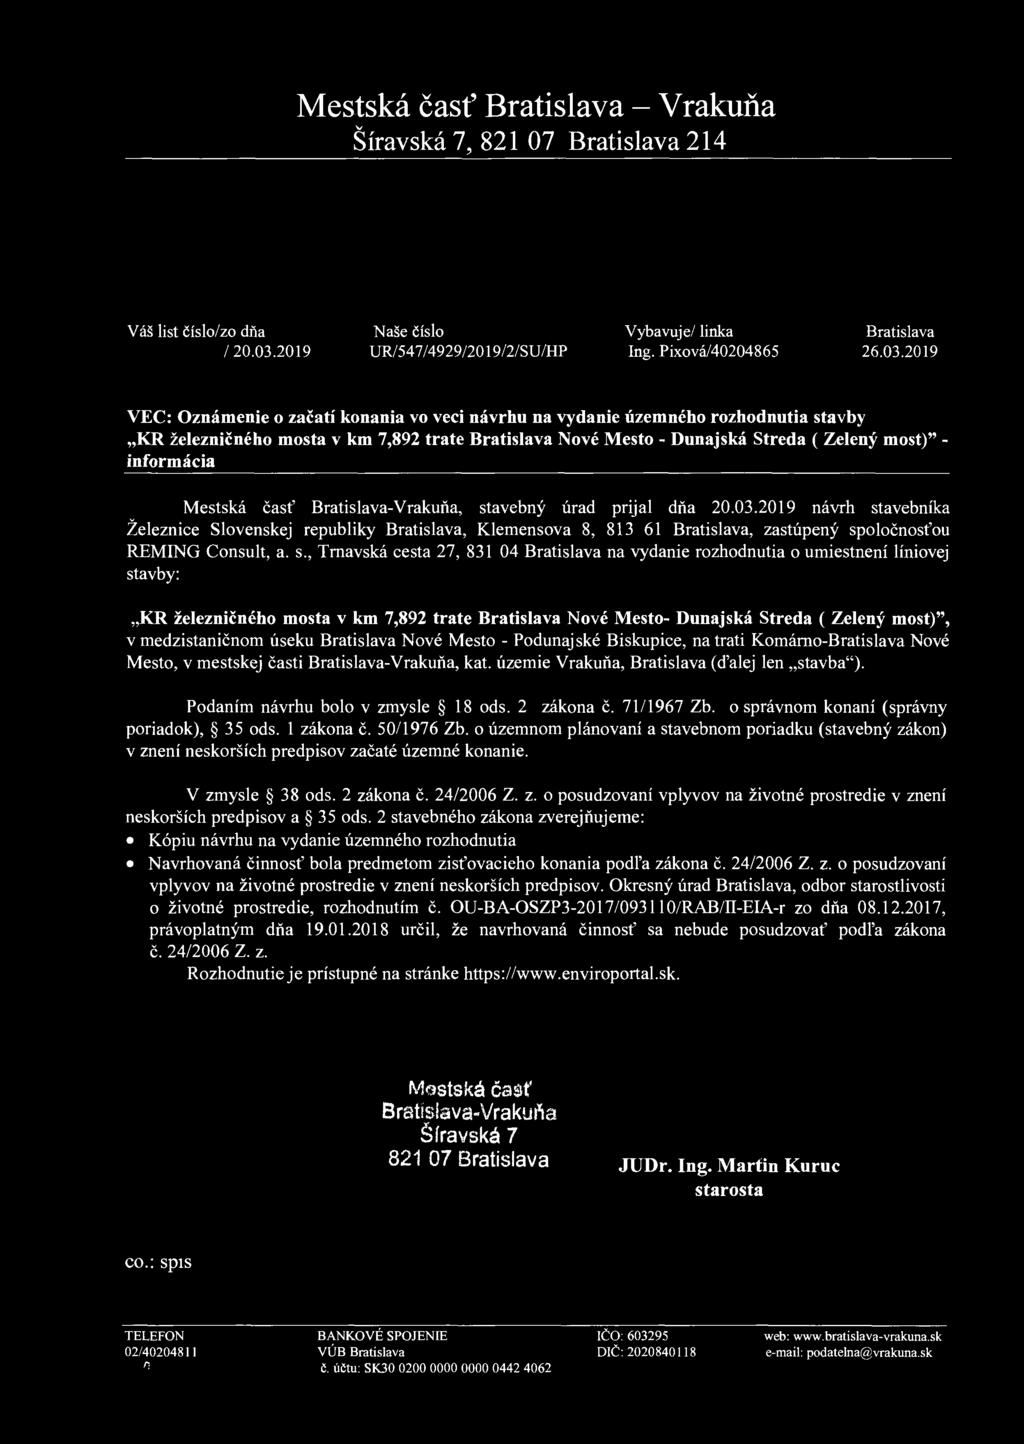 2019 VEC: Oznámenie o začatí konania vo veci návrhu na vydanie územného rozhodnutia stavby KR železničného mosta v km 7,892 trate Bratislava Nové Mesto - Dunajská Streda ( Zelený most)" - informácia